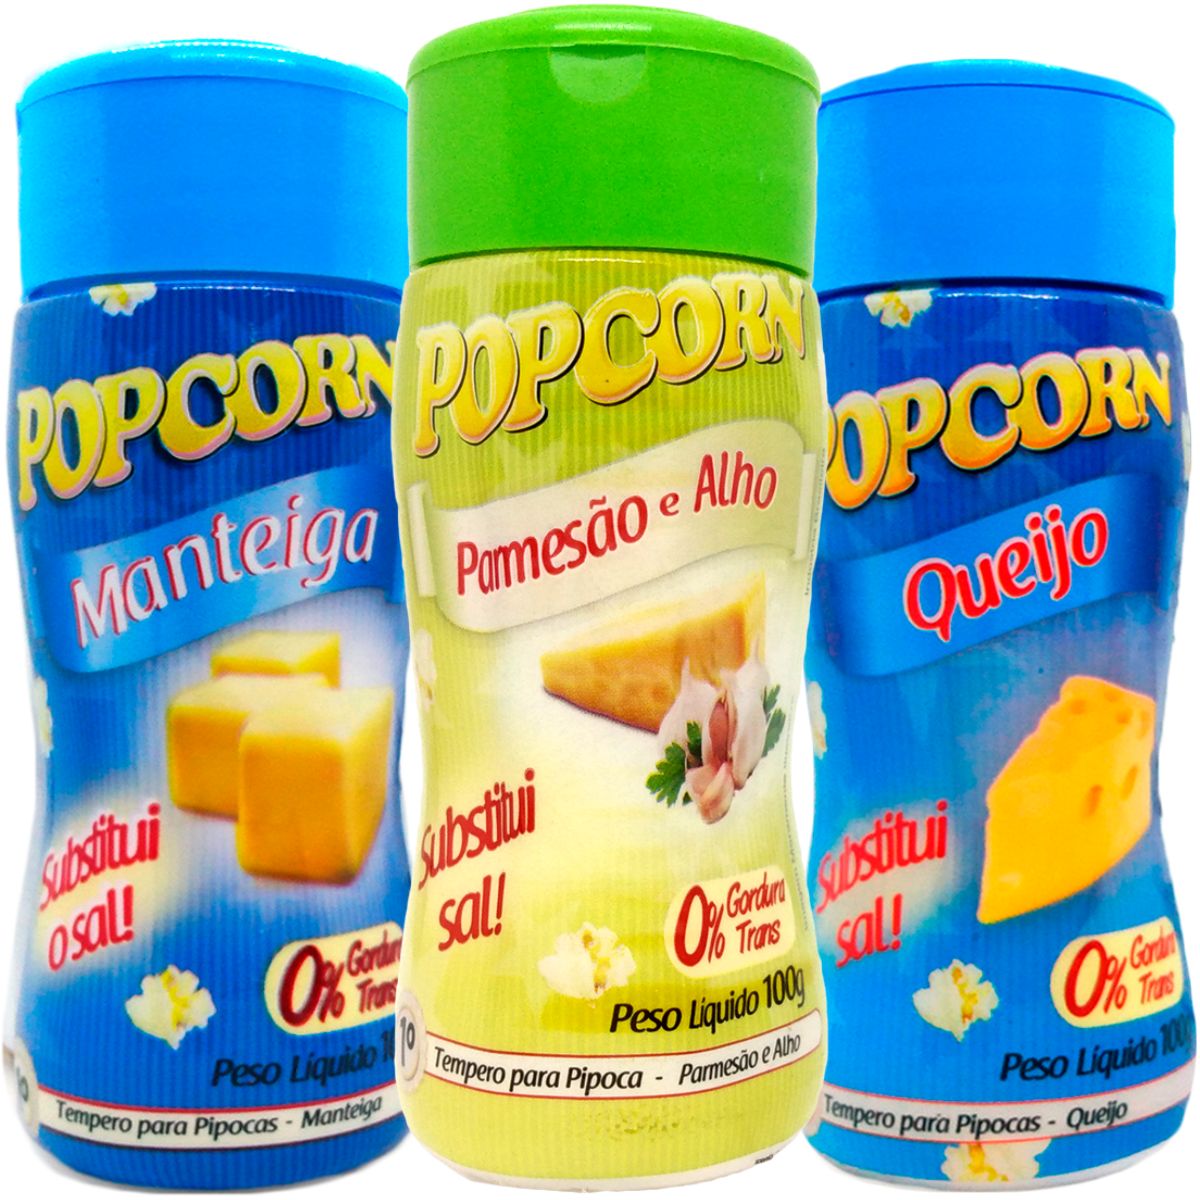 Combo Tempero Para Pipoca Popcorn 3 Sabores - Manteiga, Queijo e Parmesão e Alho